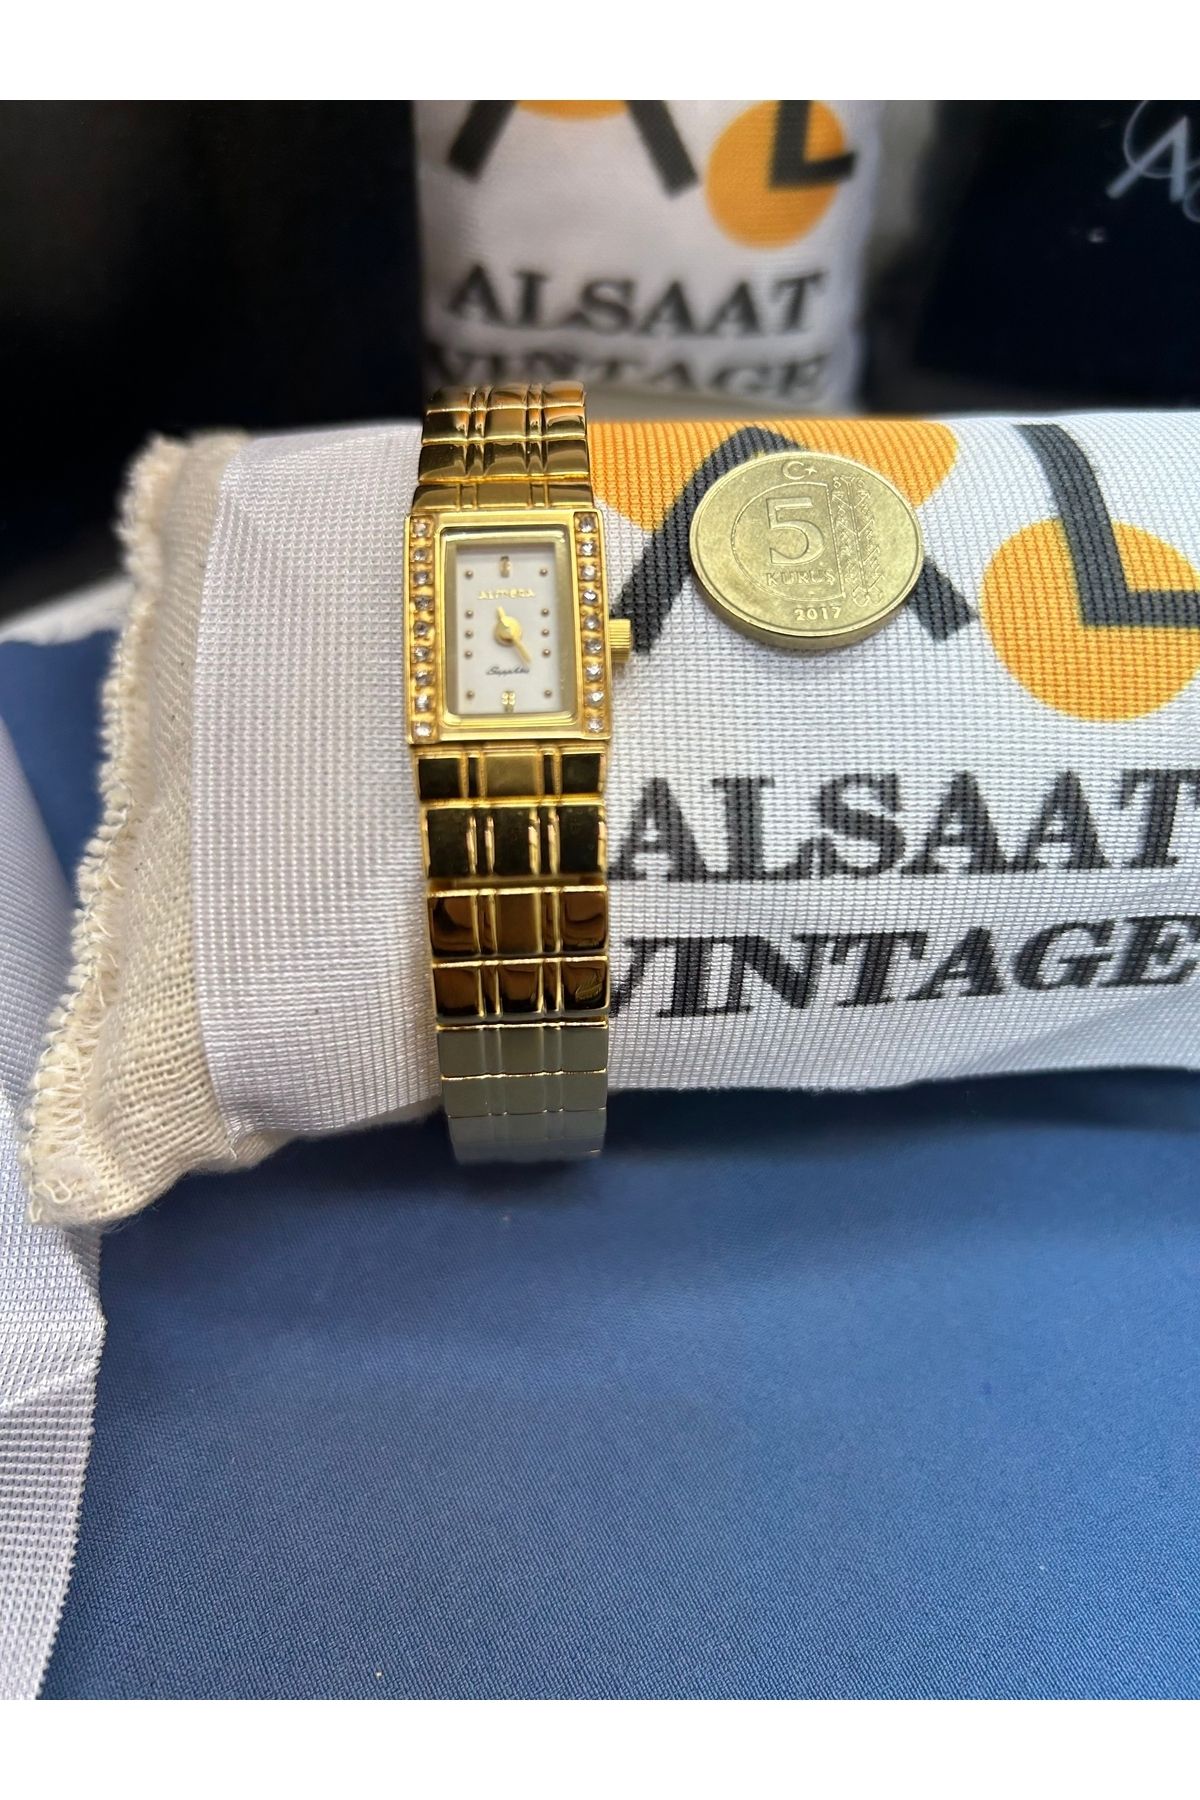 Almera Alsaat Vintage Gold Kadın saati